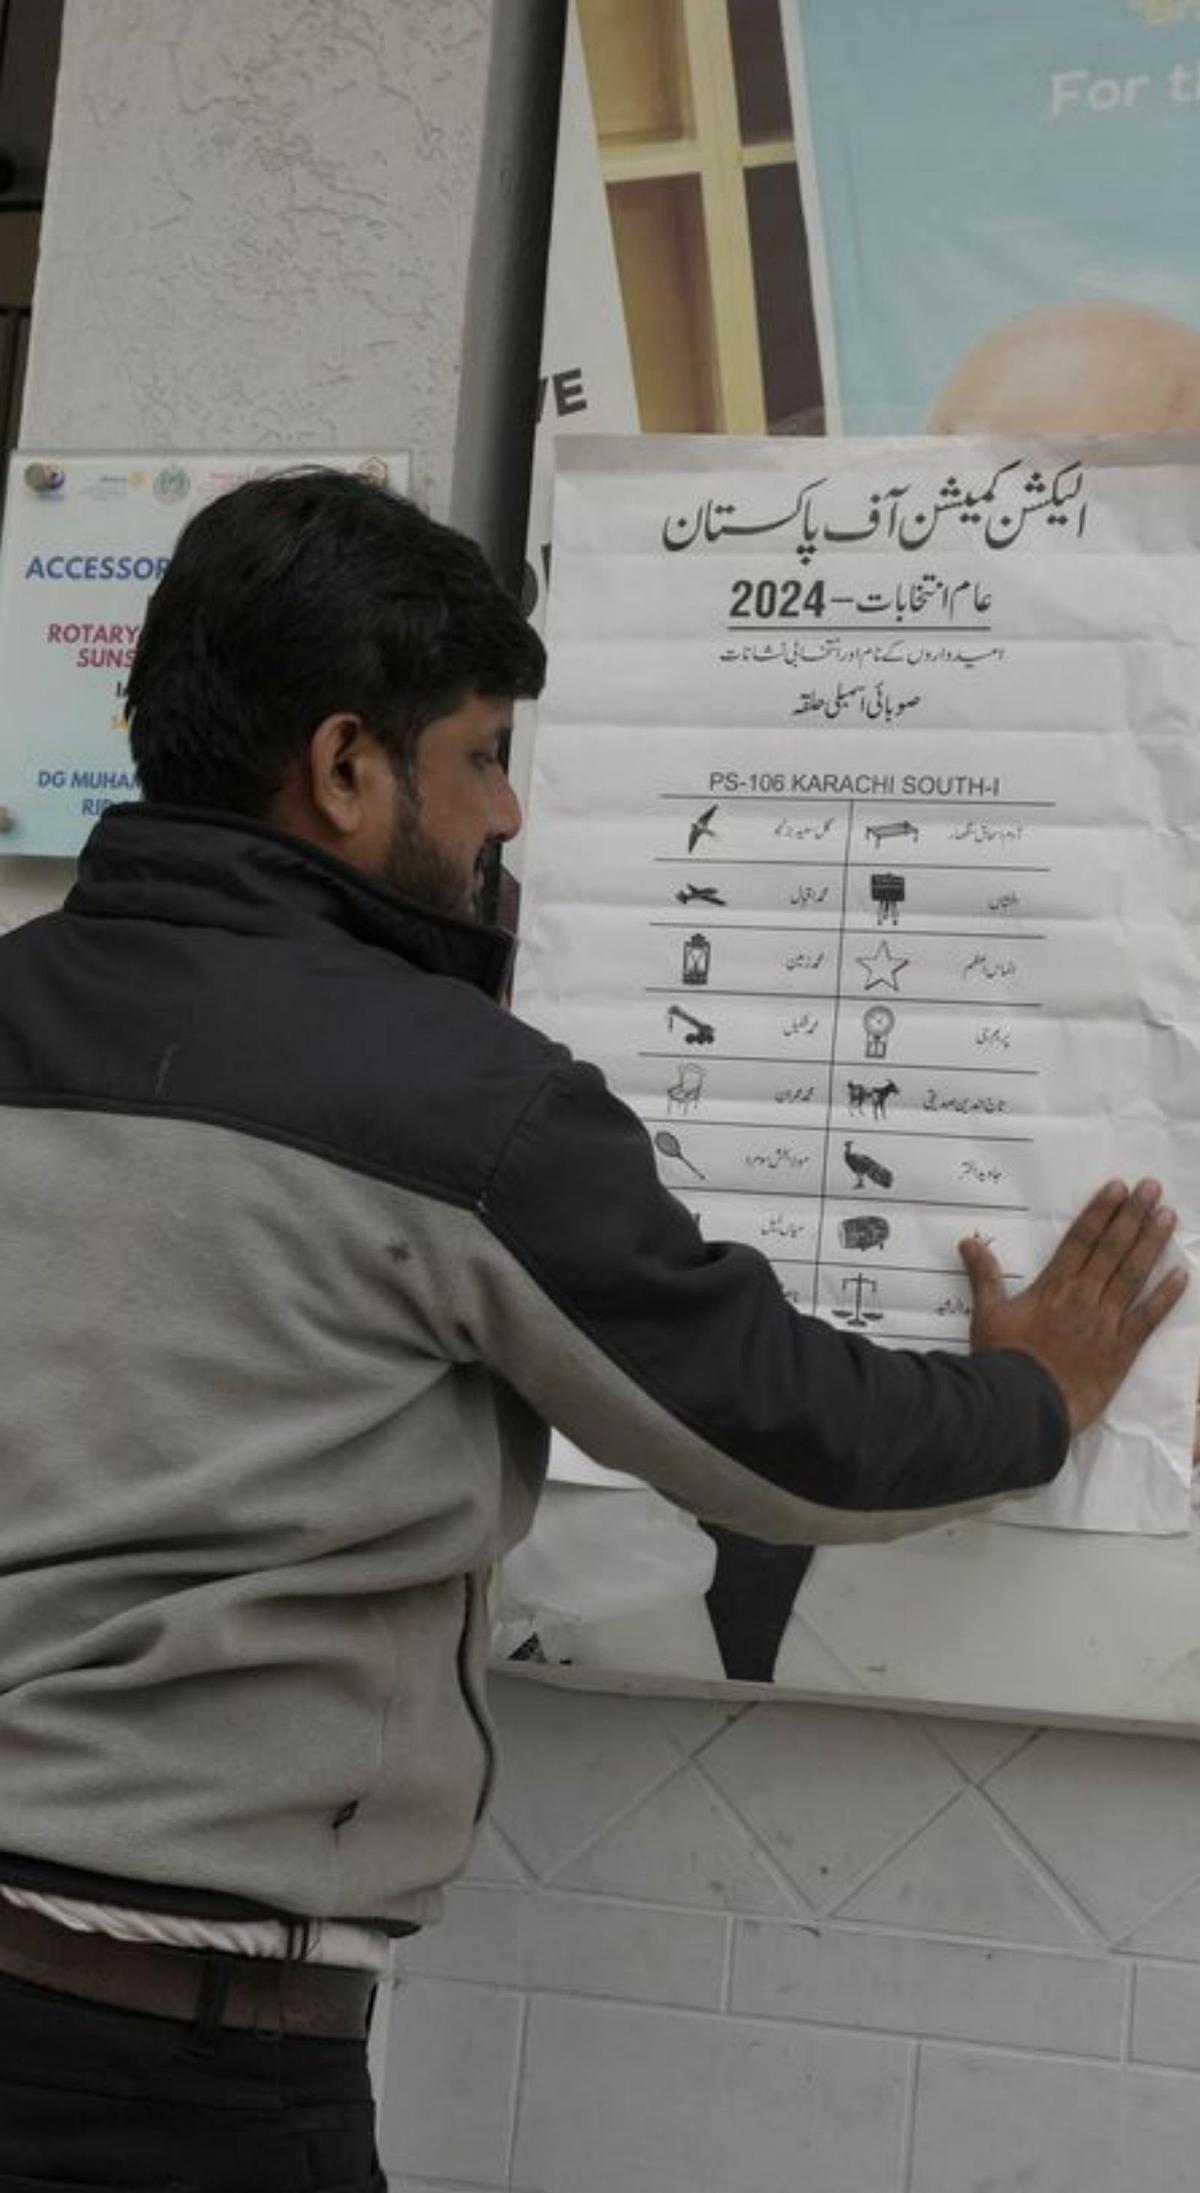 El Pakistan vota sota l’ombra de l’empresonat ex primer ministre